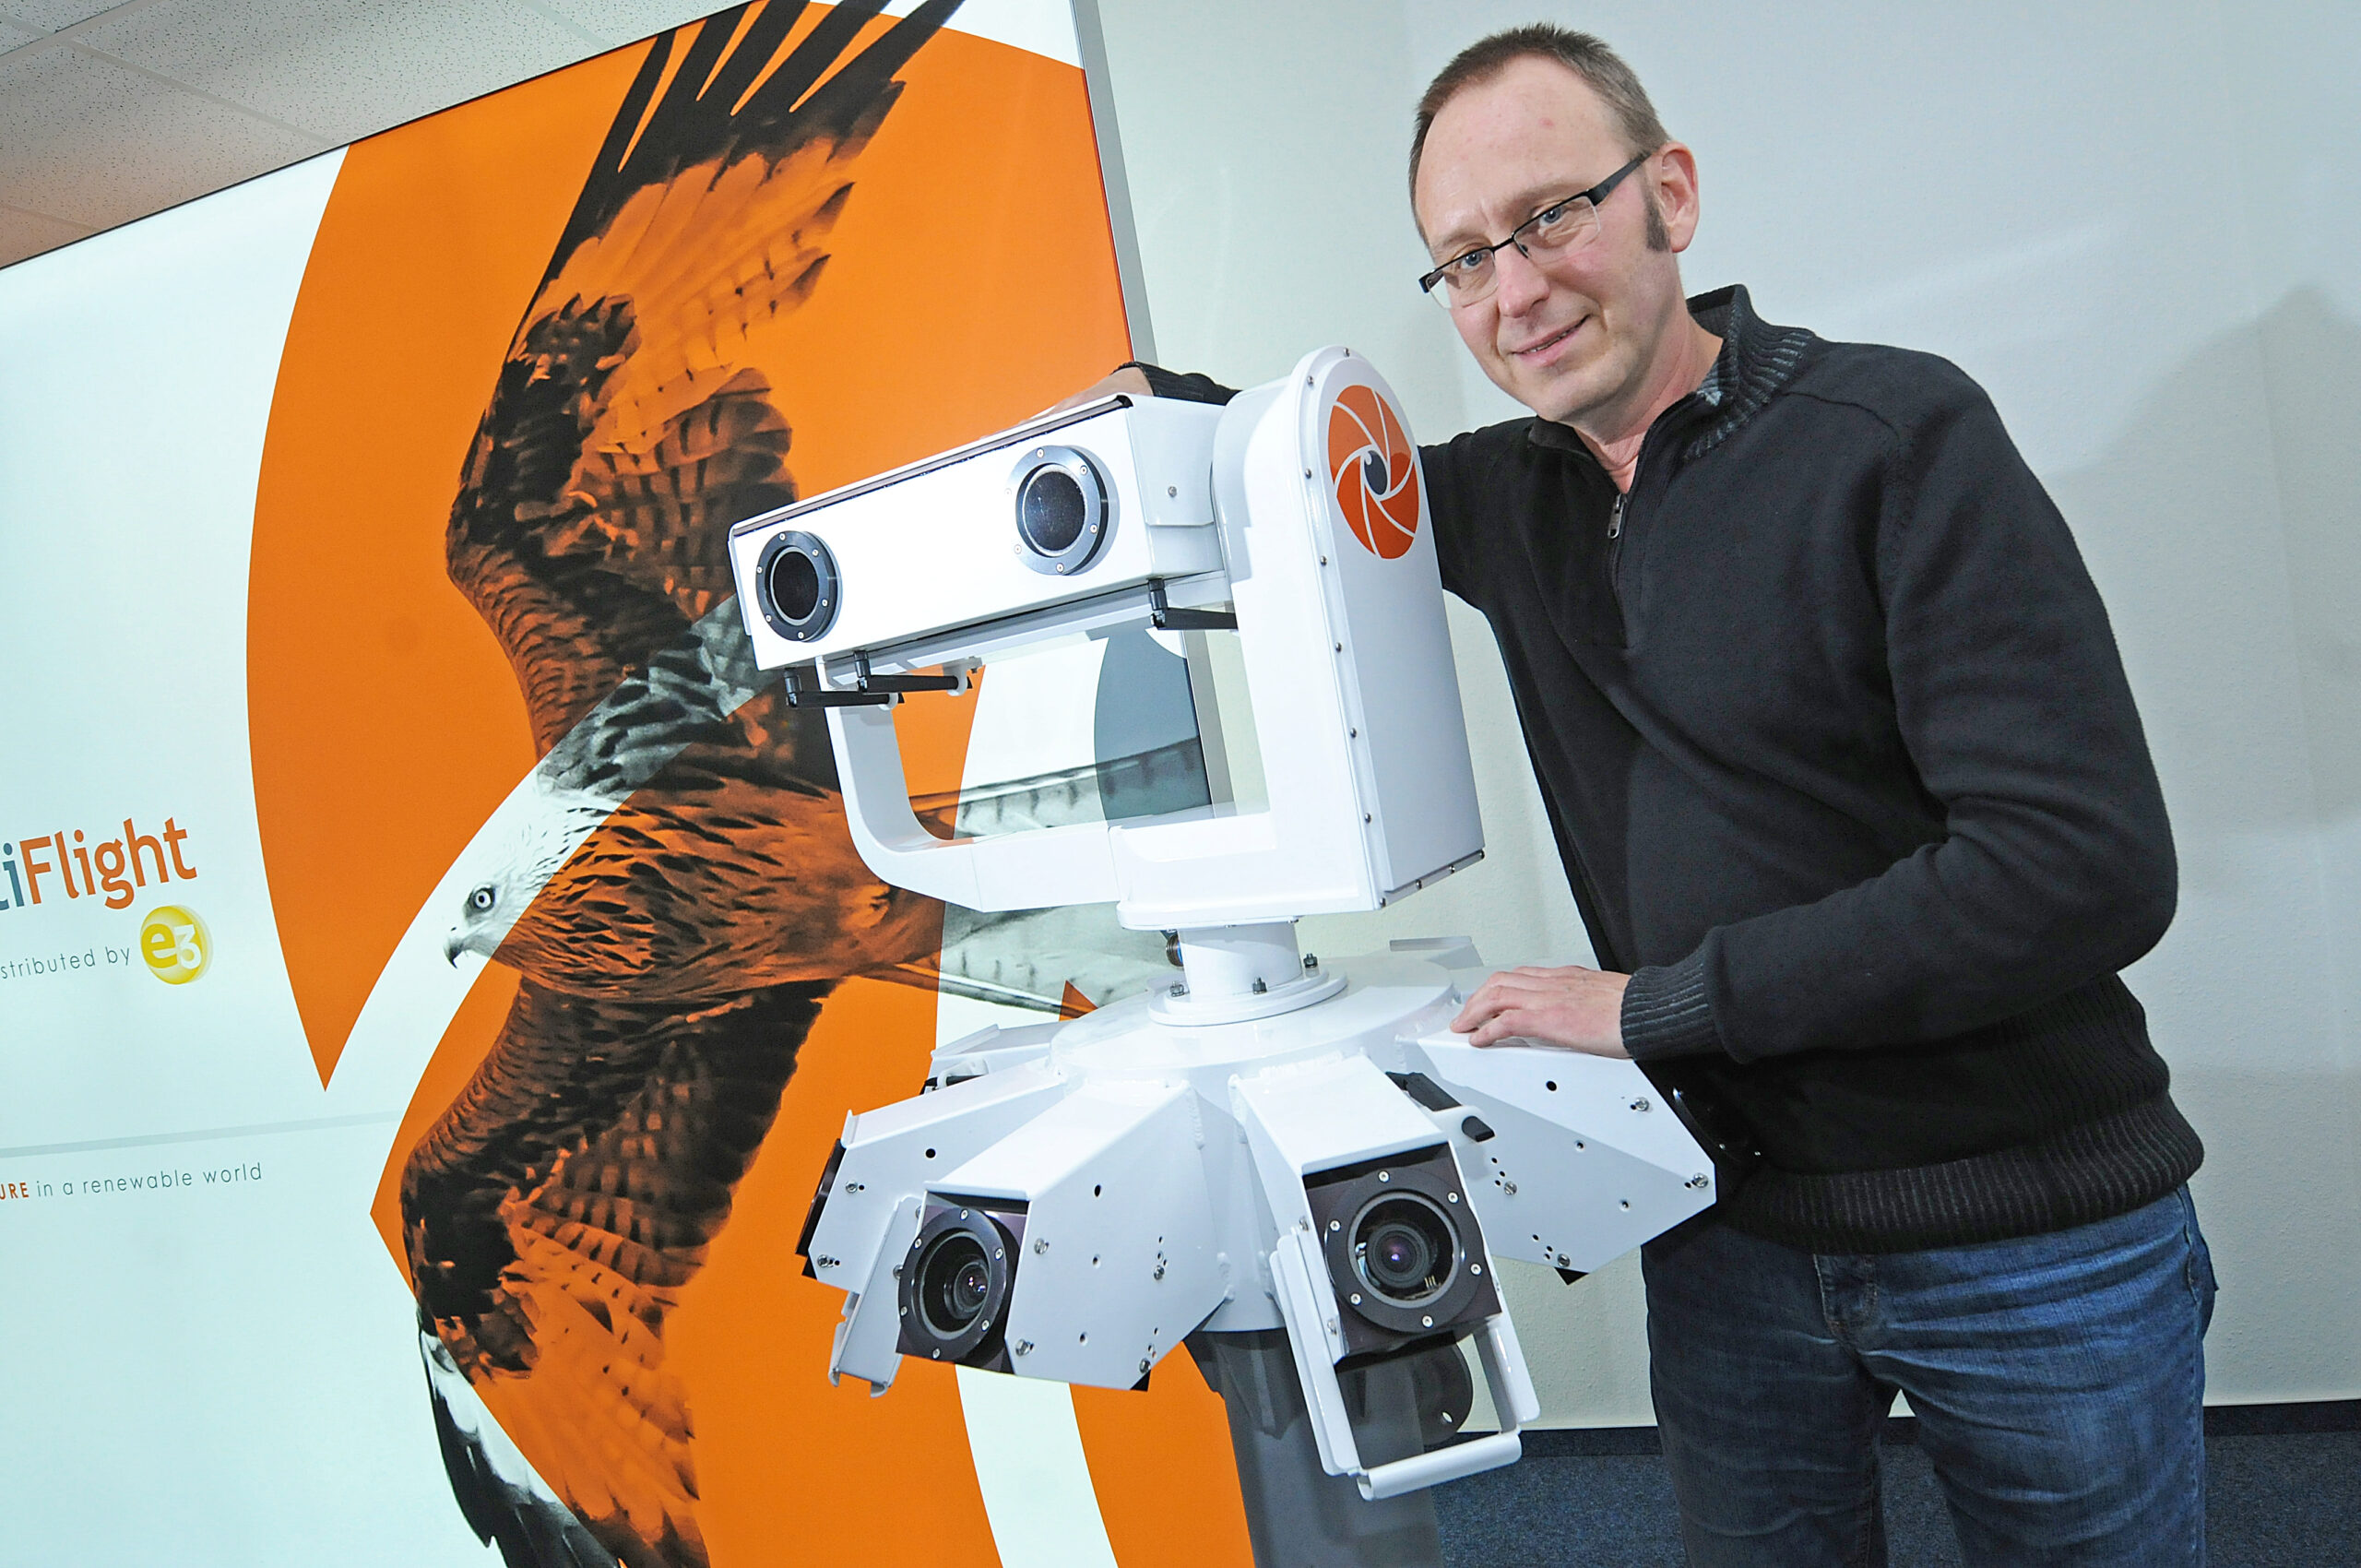 Ingenieur Heiko Mescher von der Hamburger Firma E3 mit einem IdentiFlight-Kamerasystem.